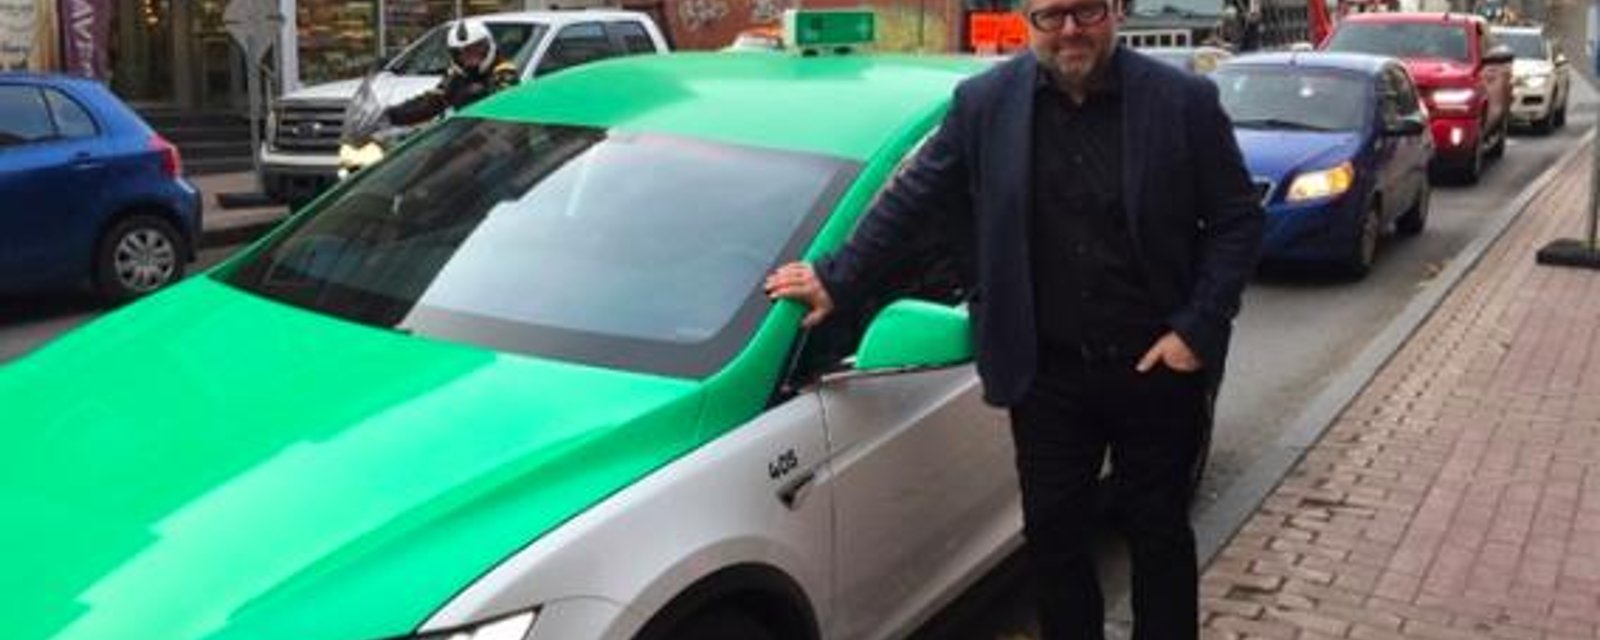 DERNIÈRE HEURE: Téo Taxi, l'entreprise lancée par Alexandre Taillefer, ferme officiellement ses portes